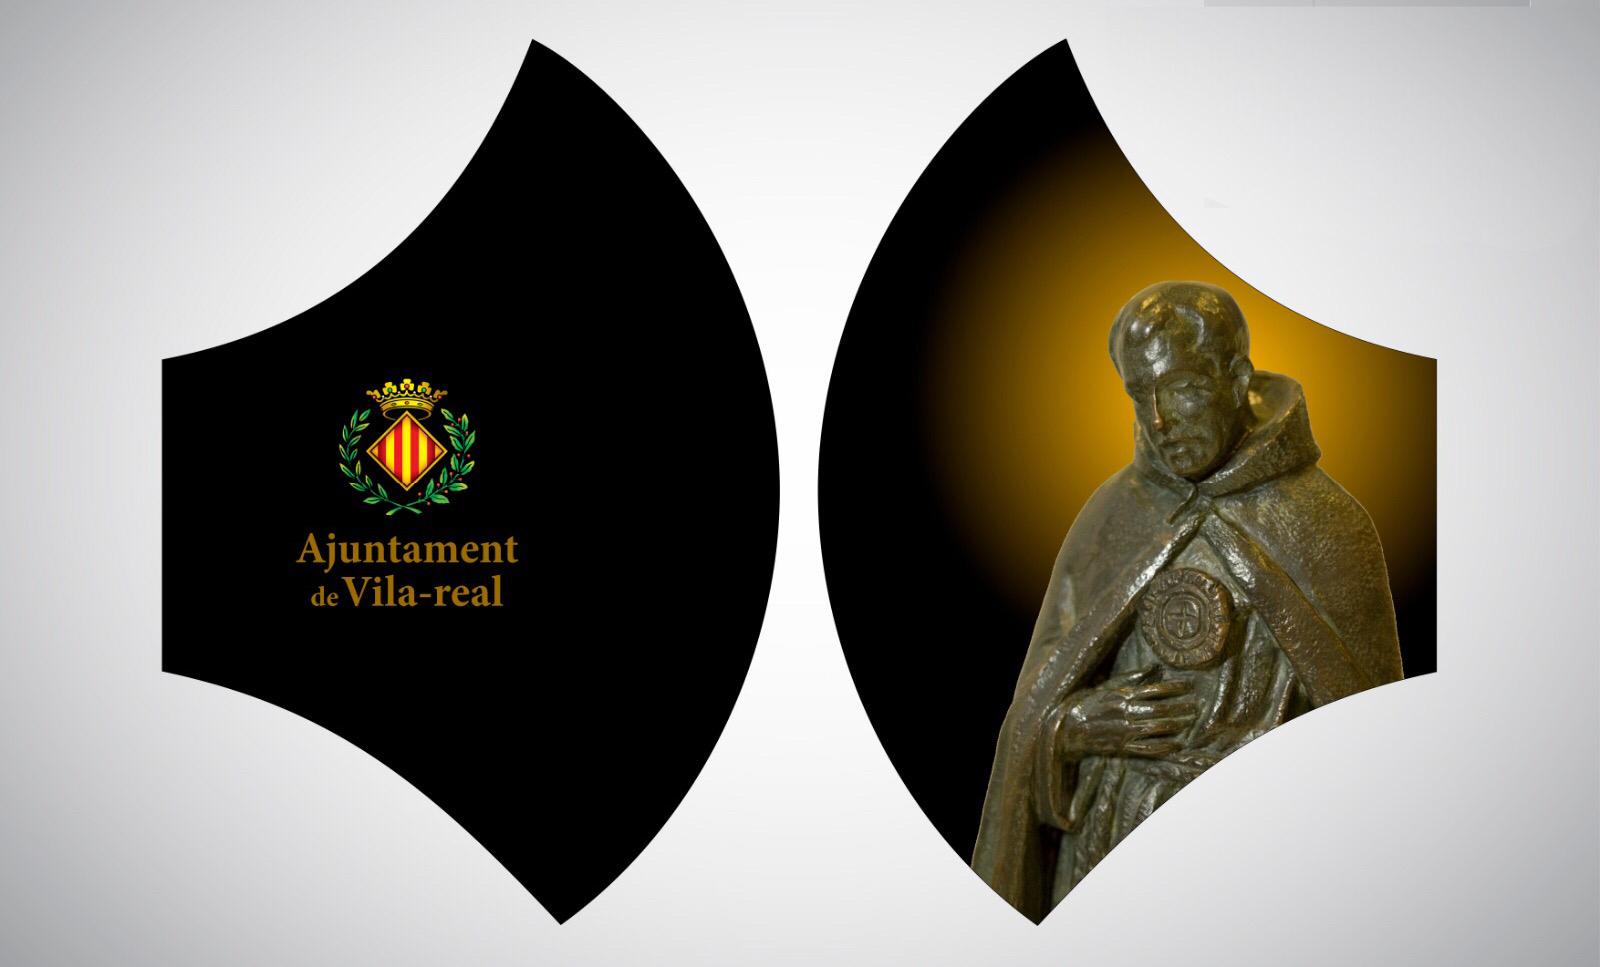 Turismo edita mascarillas con la imagen de los patrones y otros motivos representativos de Vila-real para promocionar la ciudad